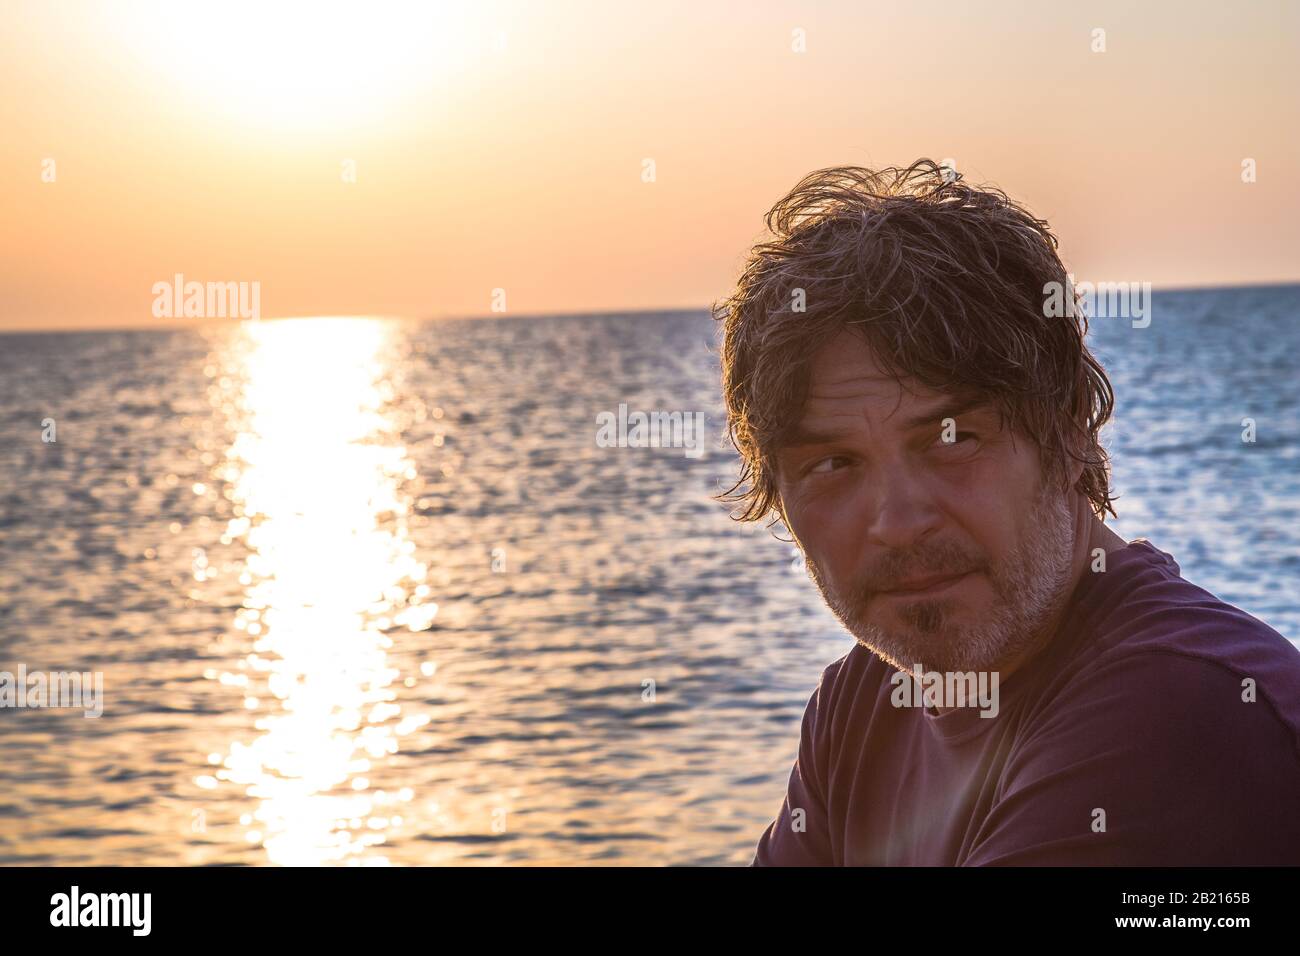 Bel homme avec un look lointain / Portrait de bon homme d'âge moyen sur la plage pendant les couchers de soleil Banque D'Images